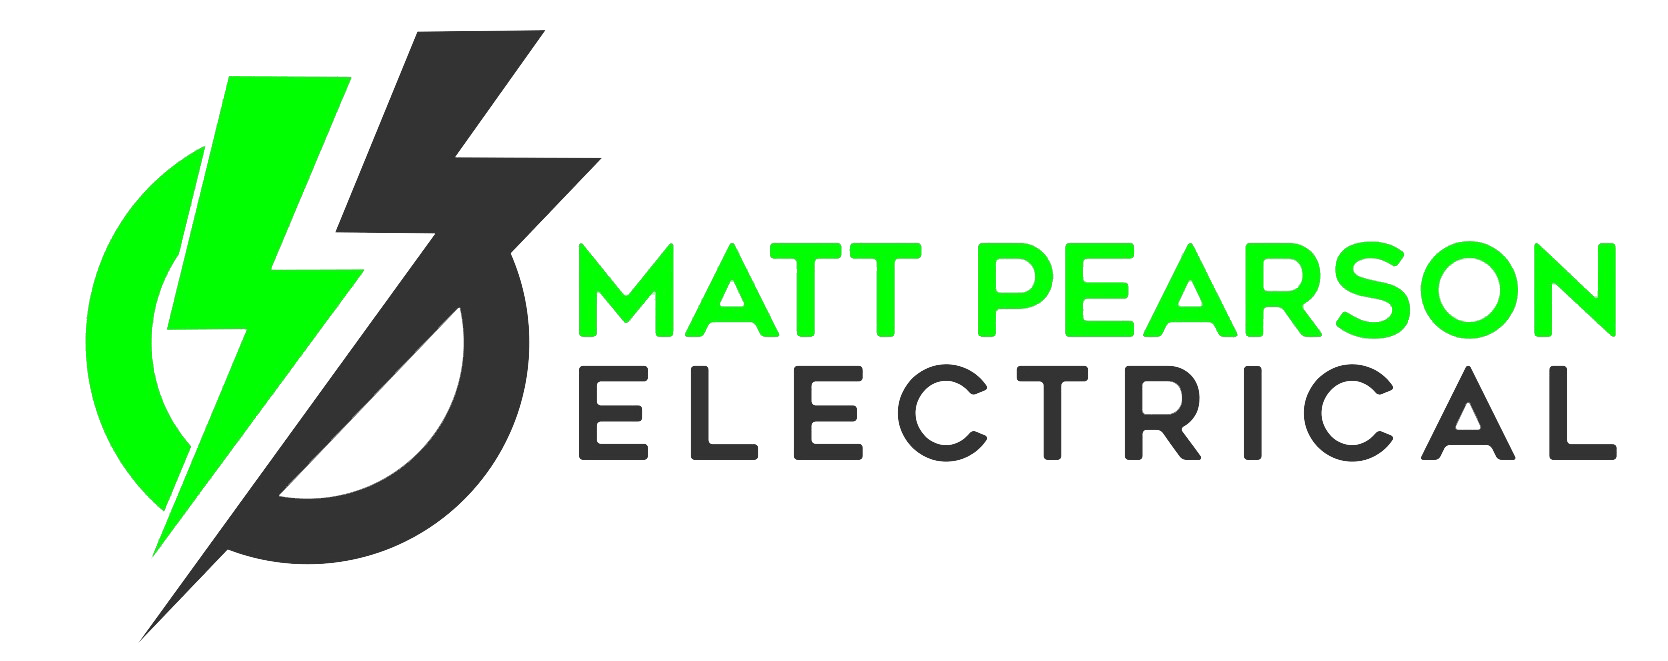 Electrical Contractor Logo - Matt Pearson Electrical